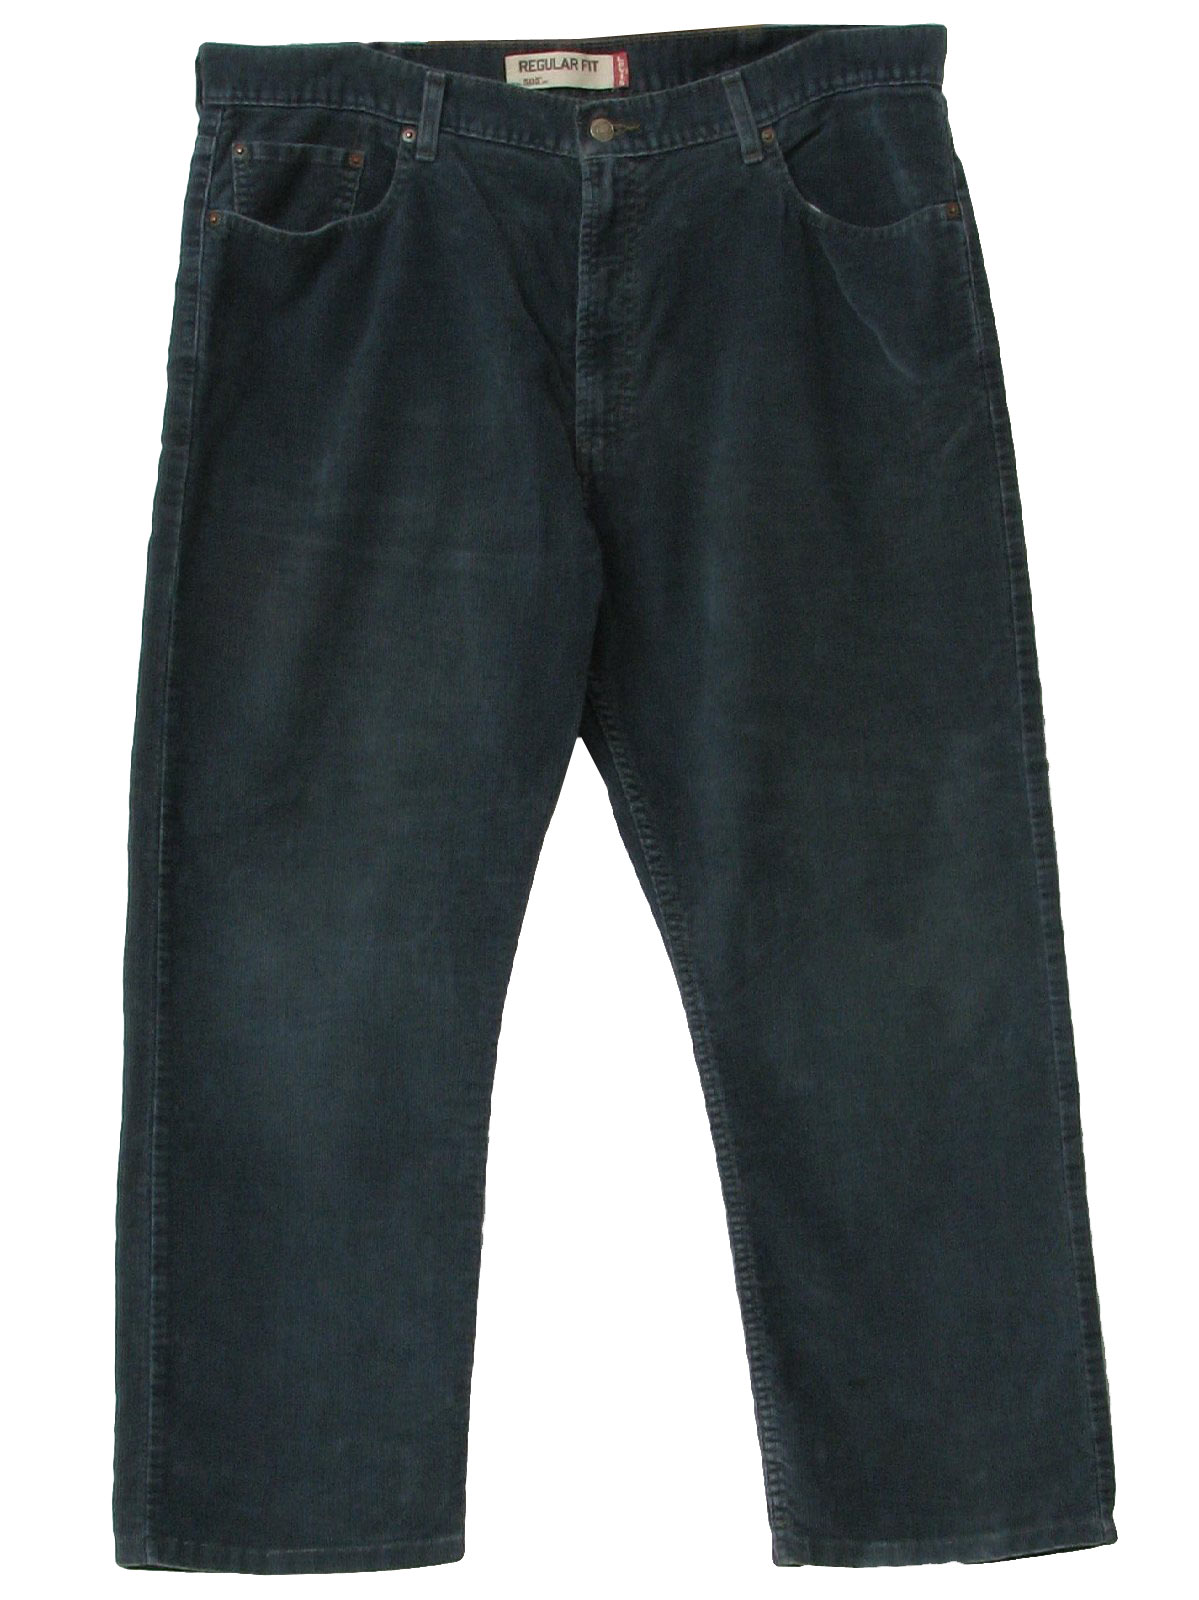 1990's Retro Pants: 90s -Levis 505- Mens slate blue cotton corduroy ...